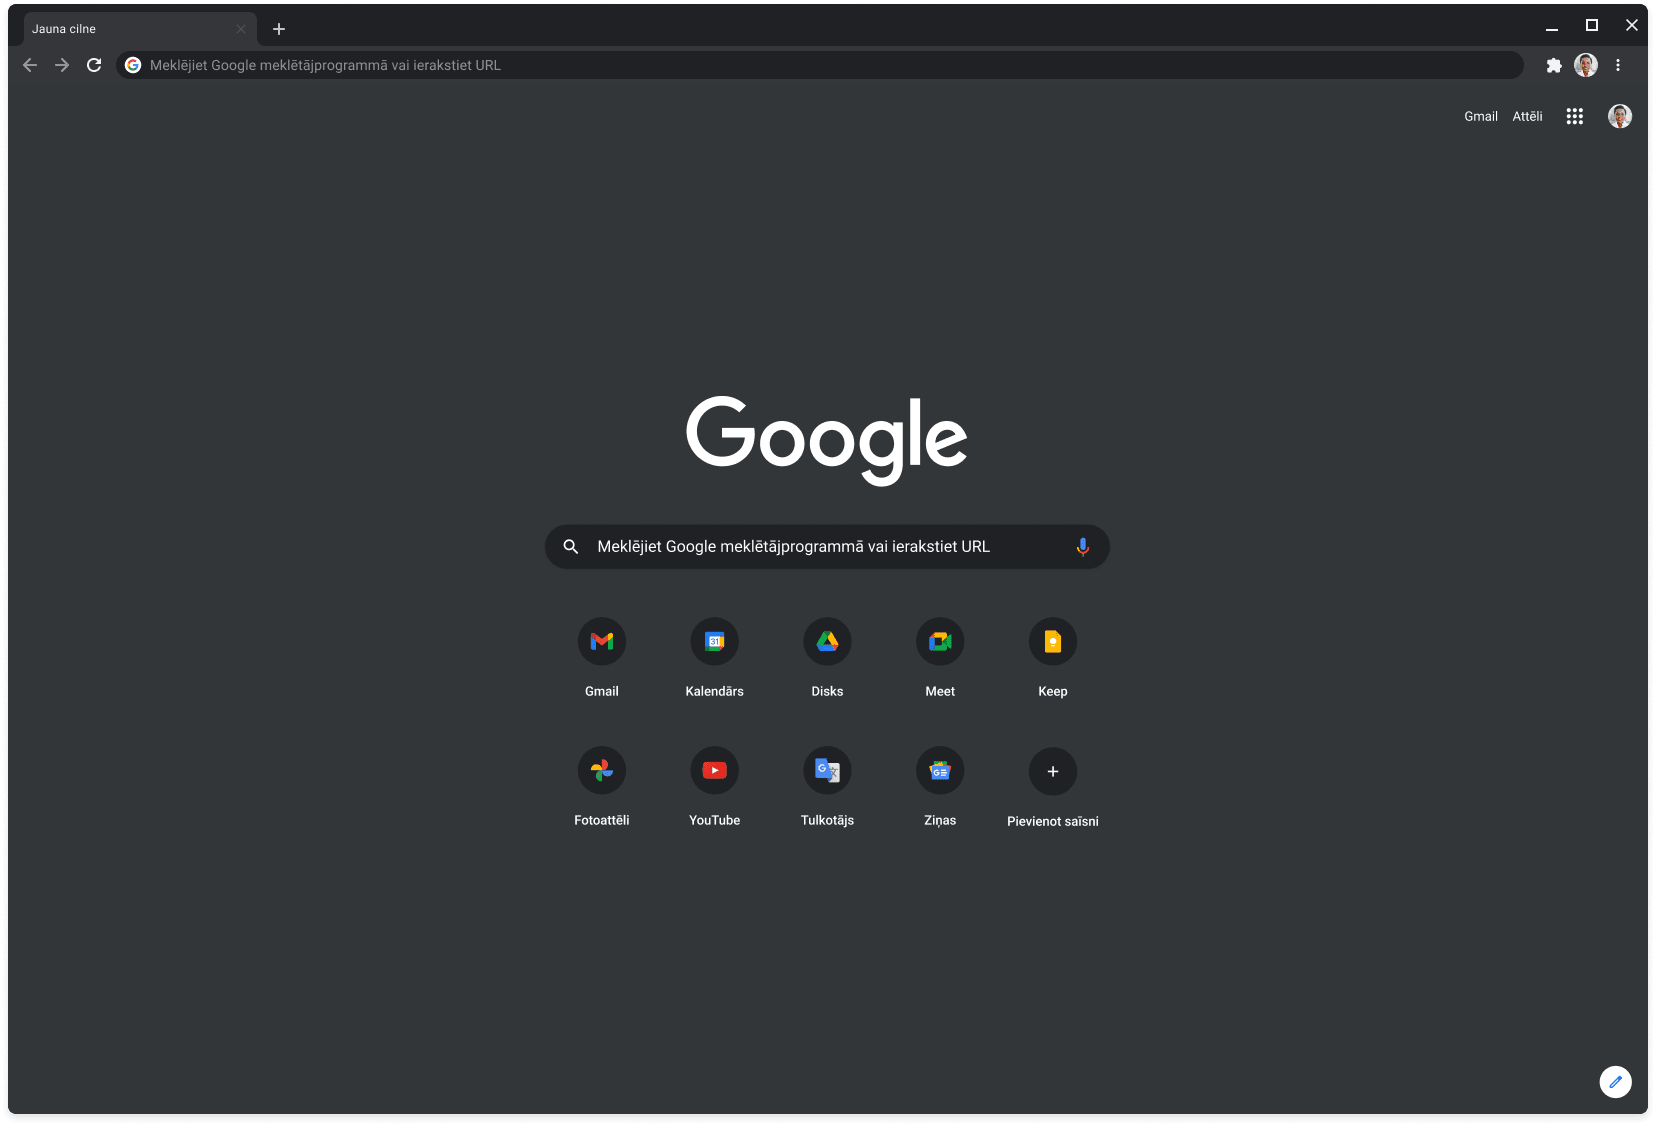 Pārlūka Chrome logā, kuram ir iespējots tumšais režīms, tiek rādīta vietne Google.com.